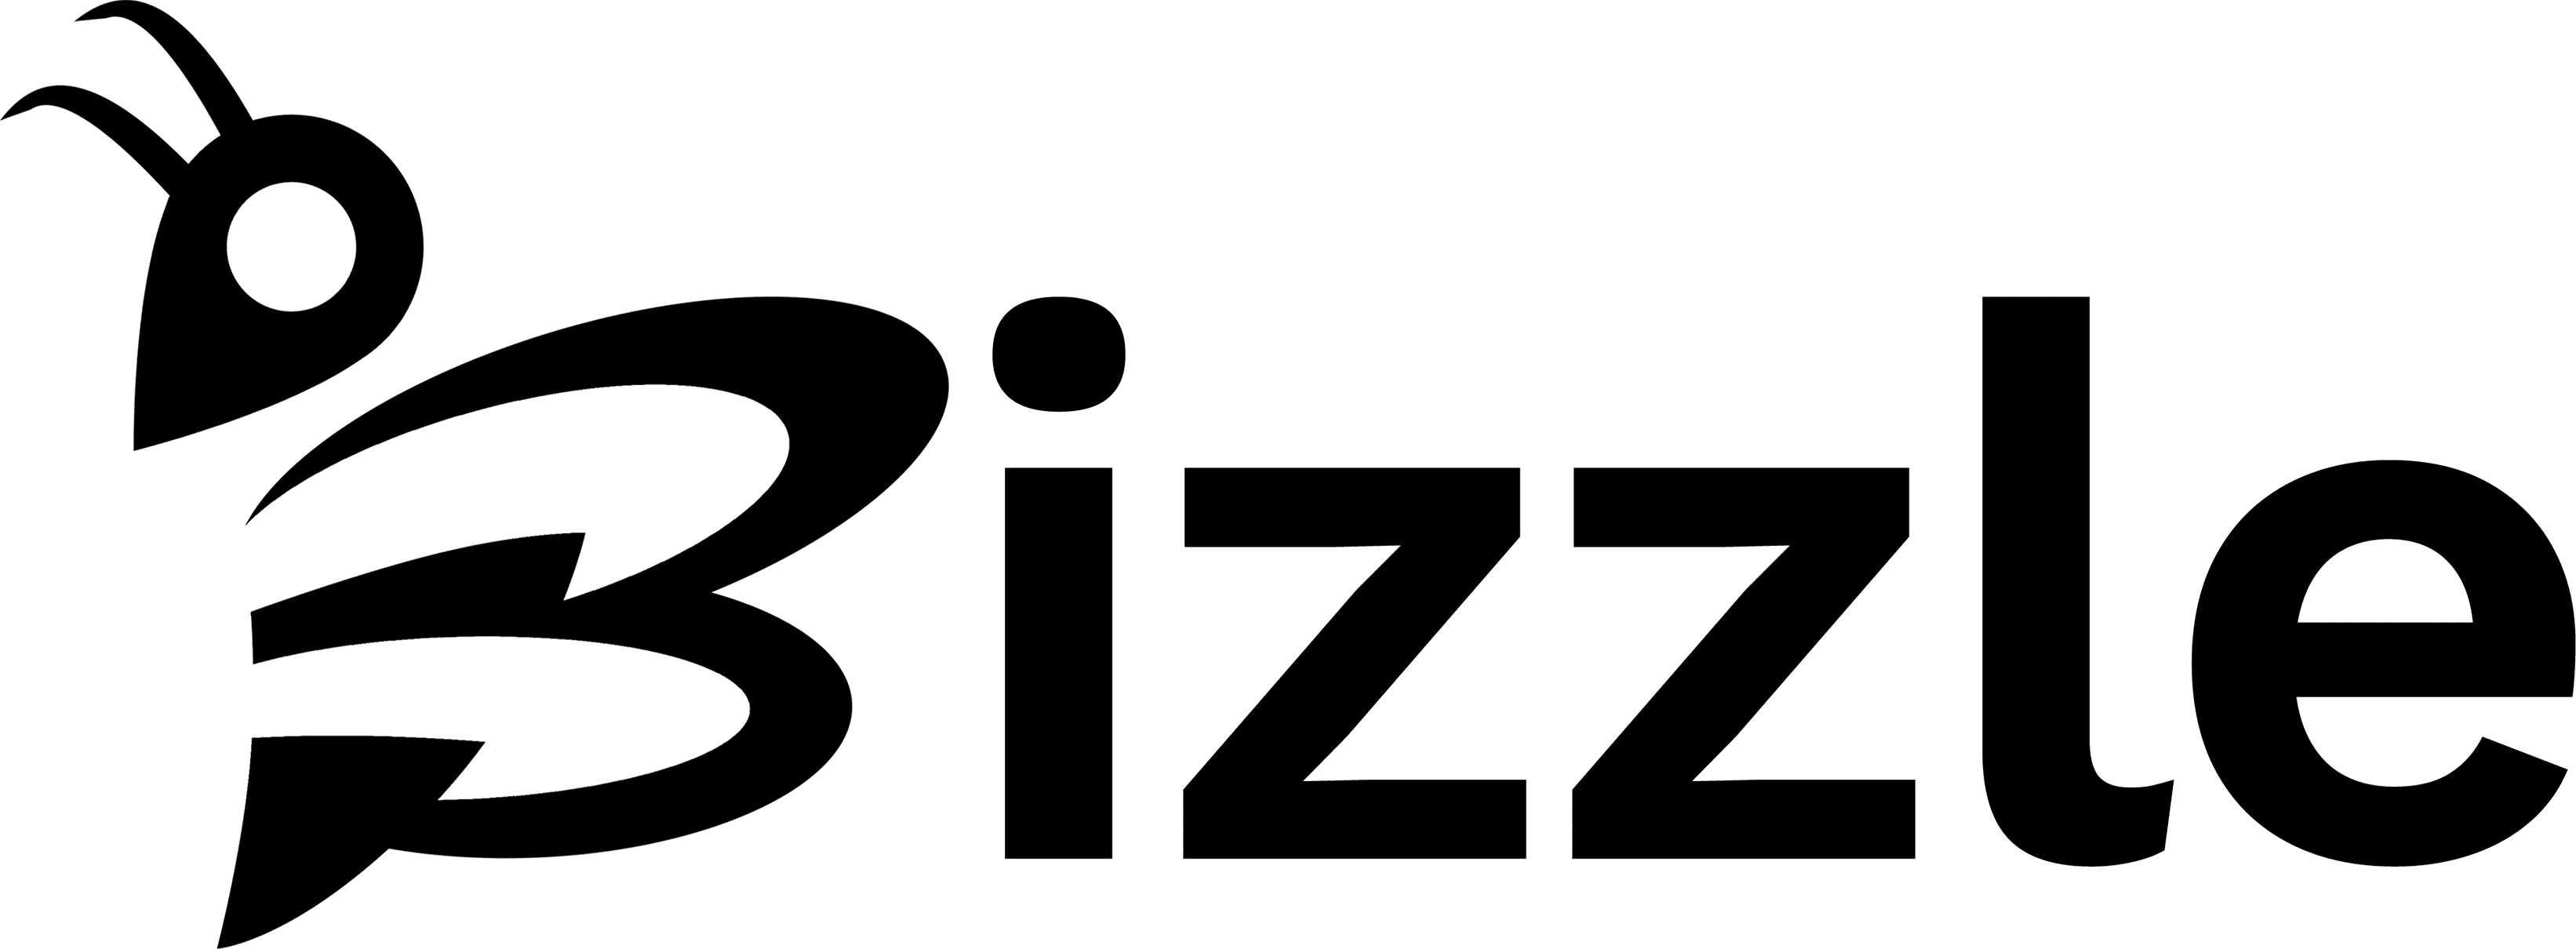 Bizzle NZ